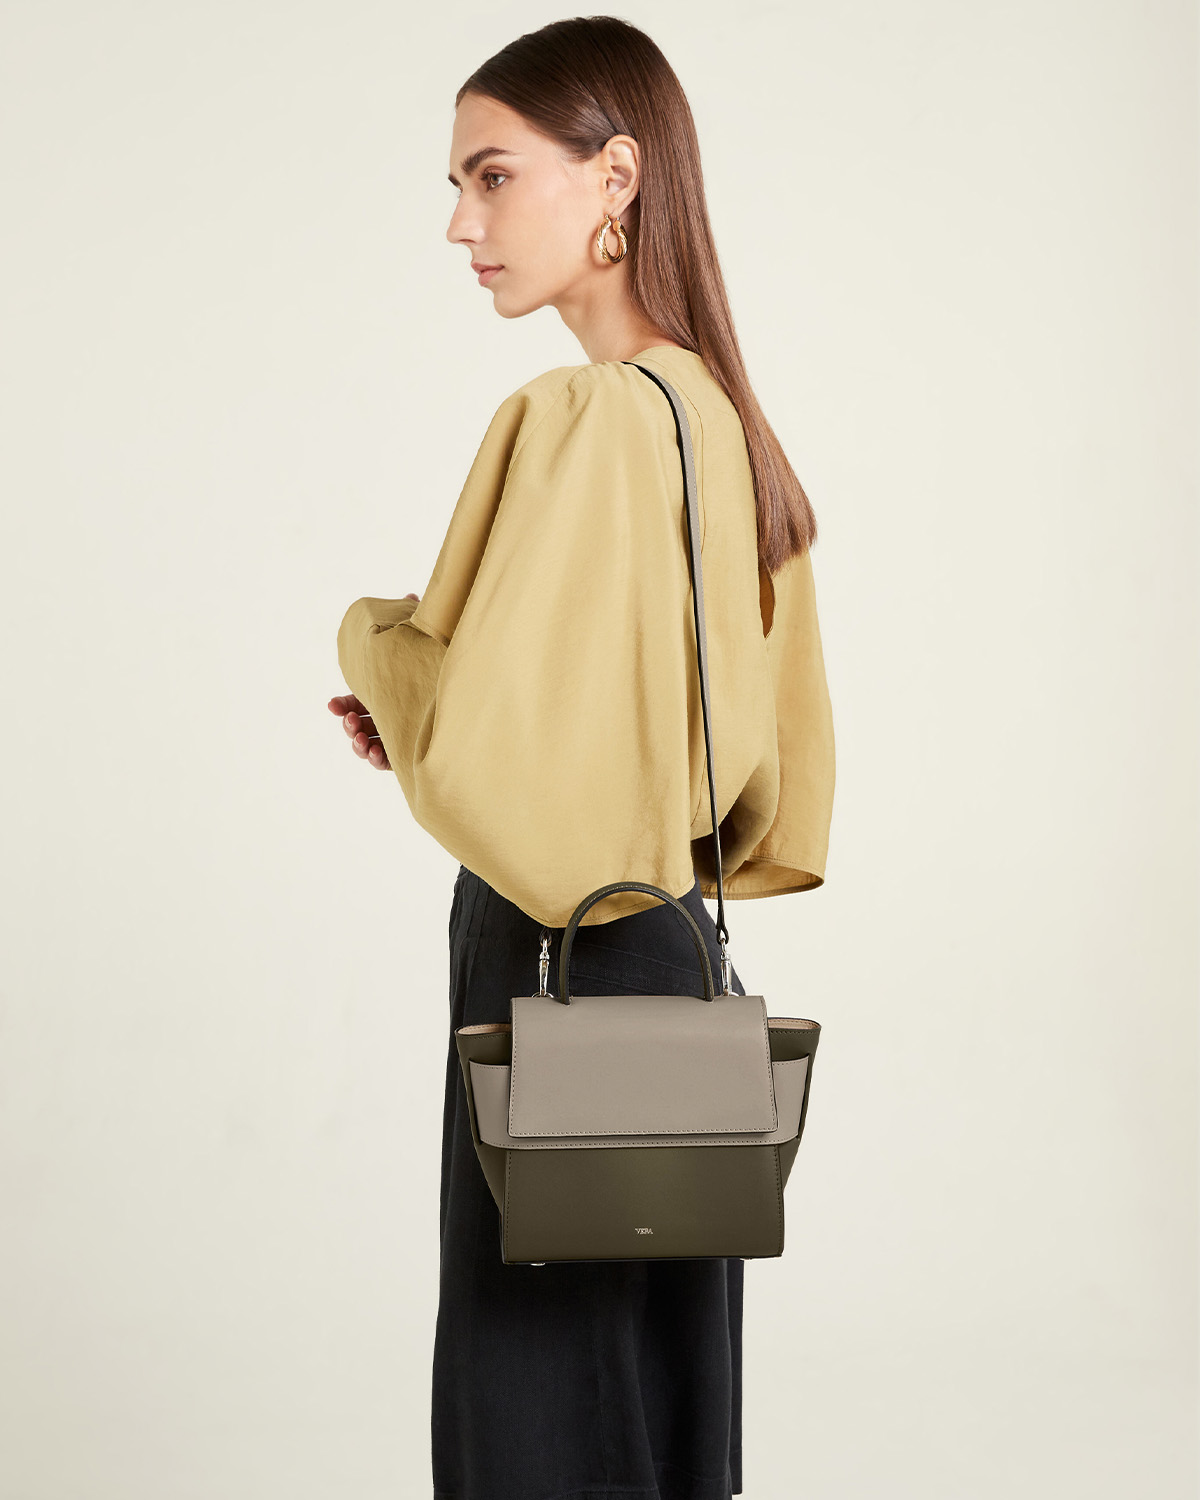 กระเป๋าถือหนังแท้ VERA Margo Leather Handbag, Size 20 สี Olive green